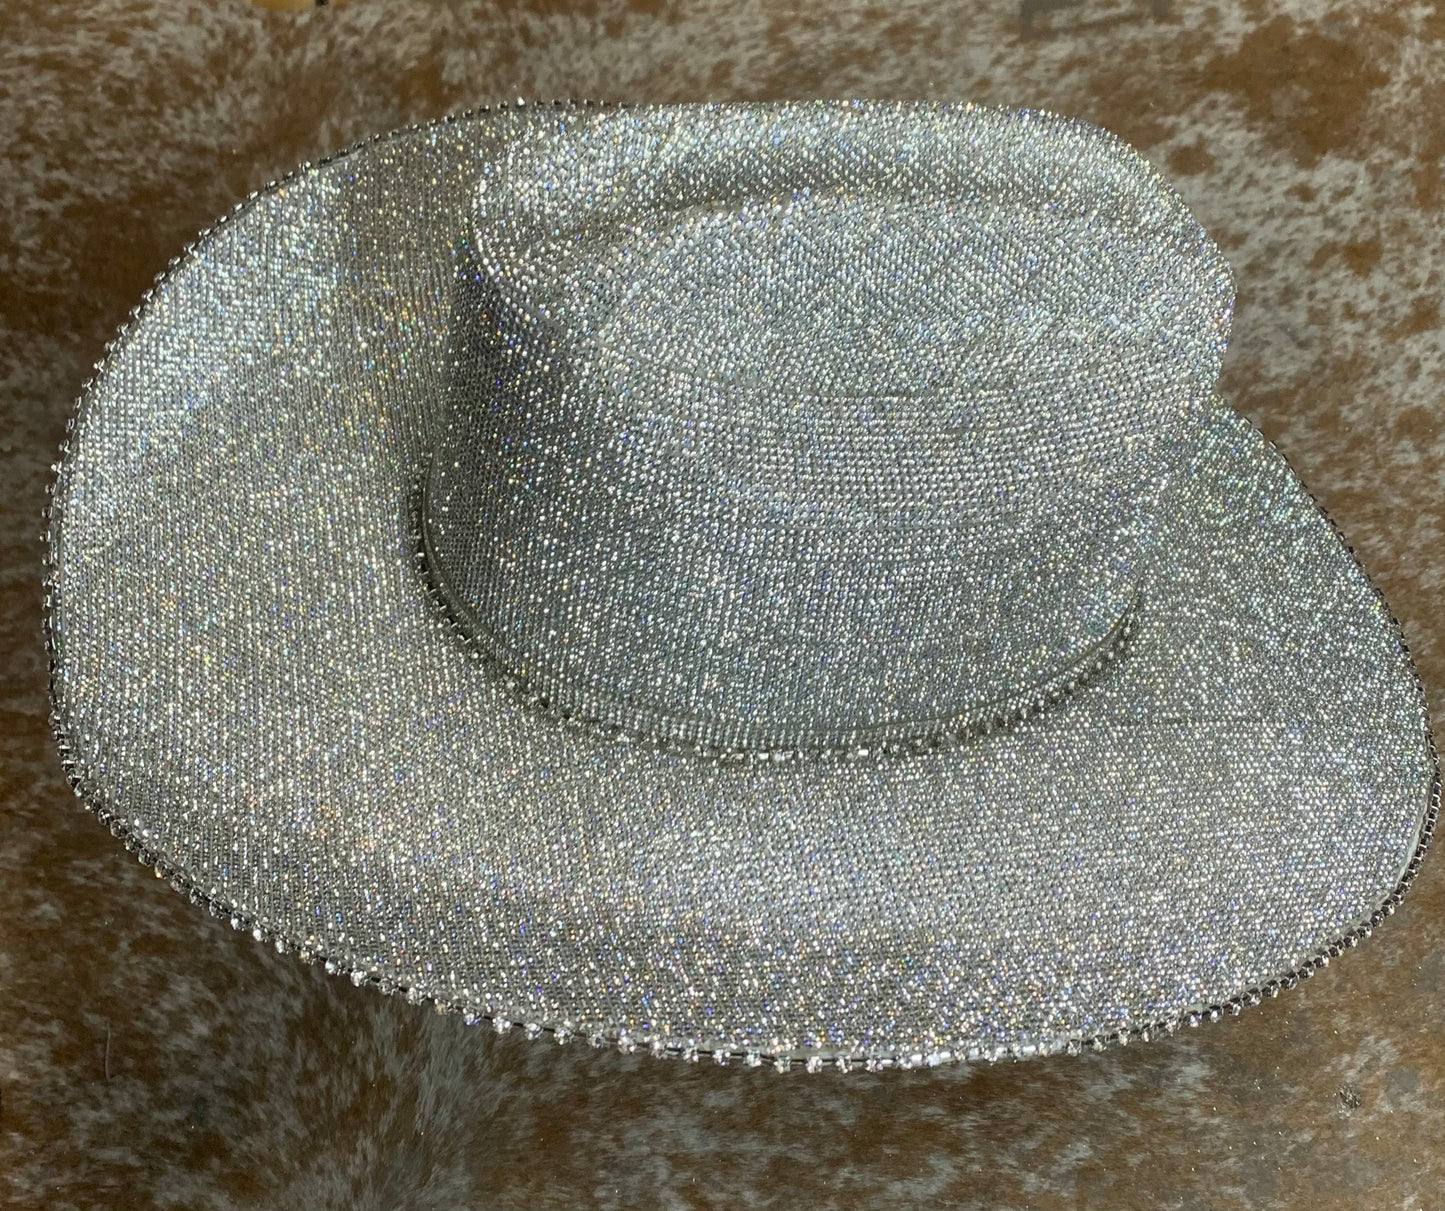 Silverella Cowgirl Hat